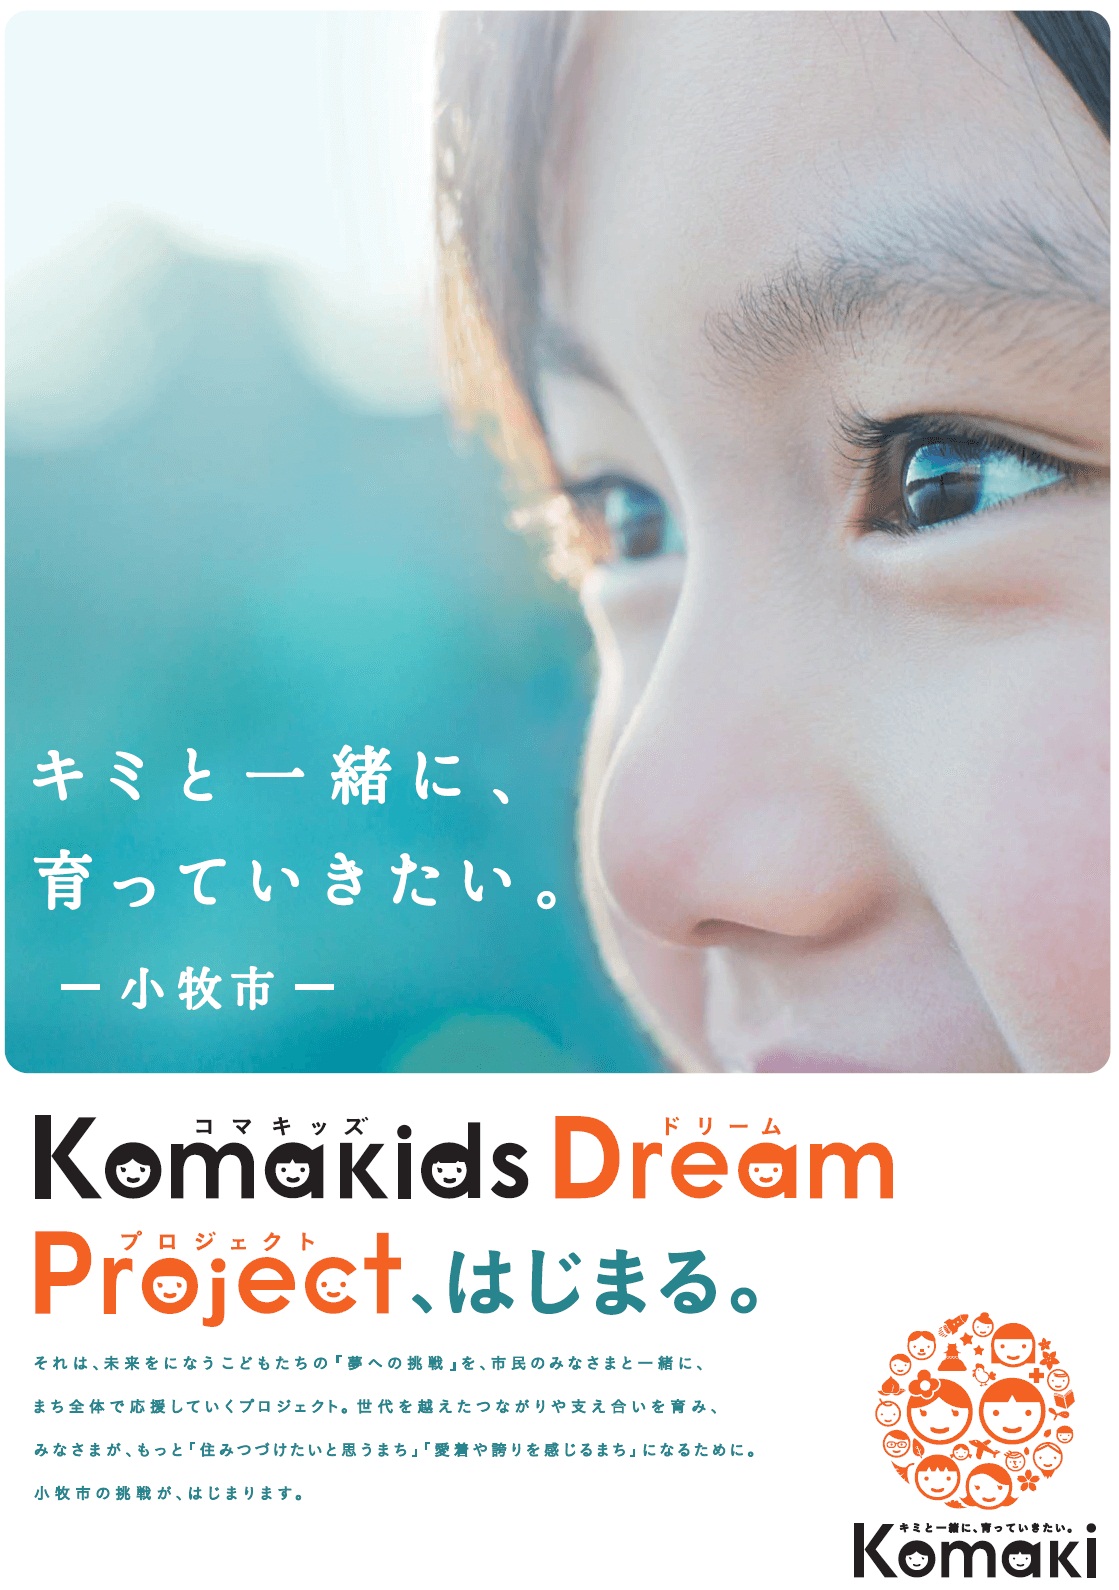 キミと一緒に育っていきたい。小牧市 Komakids Dream Projectはじまる